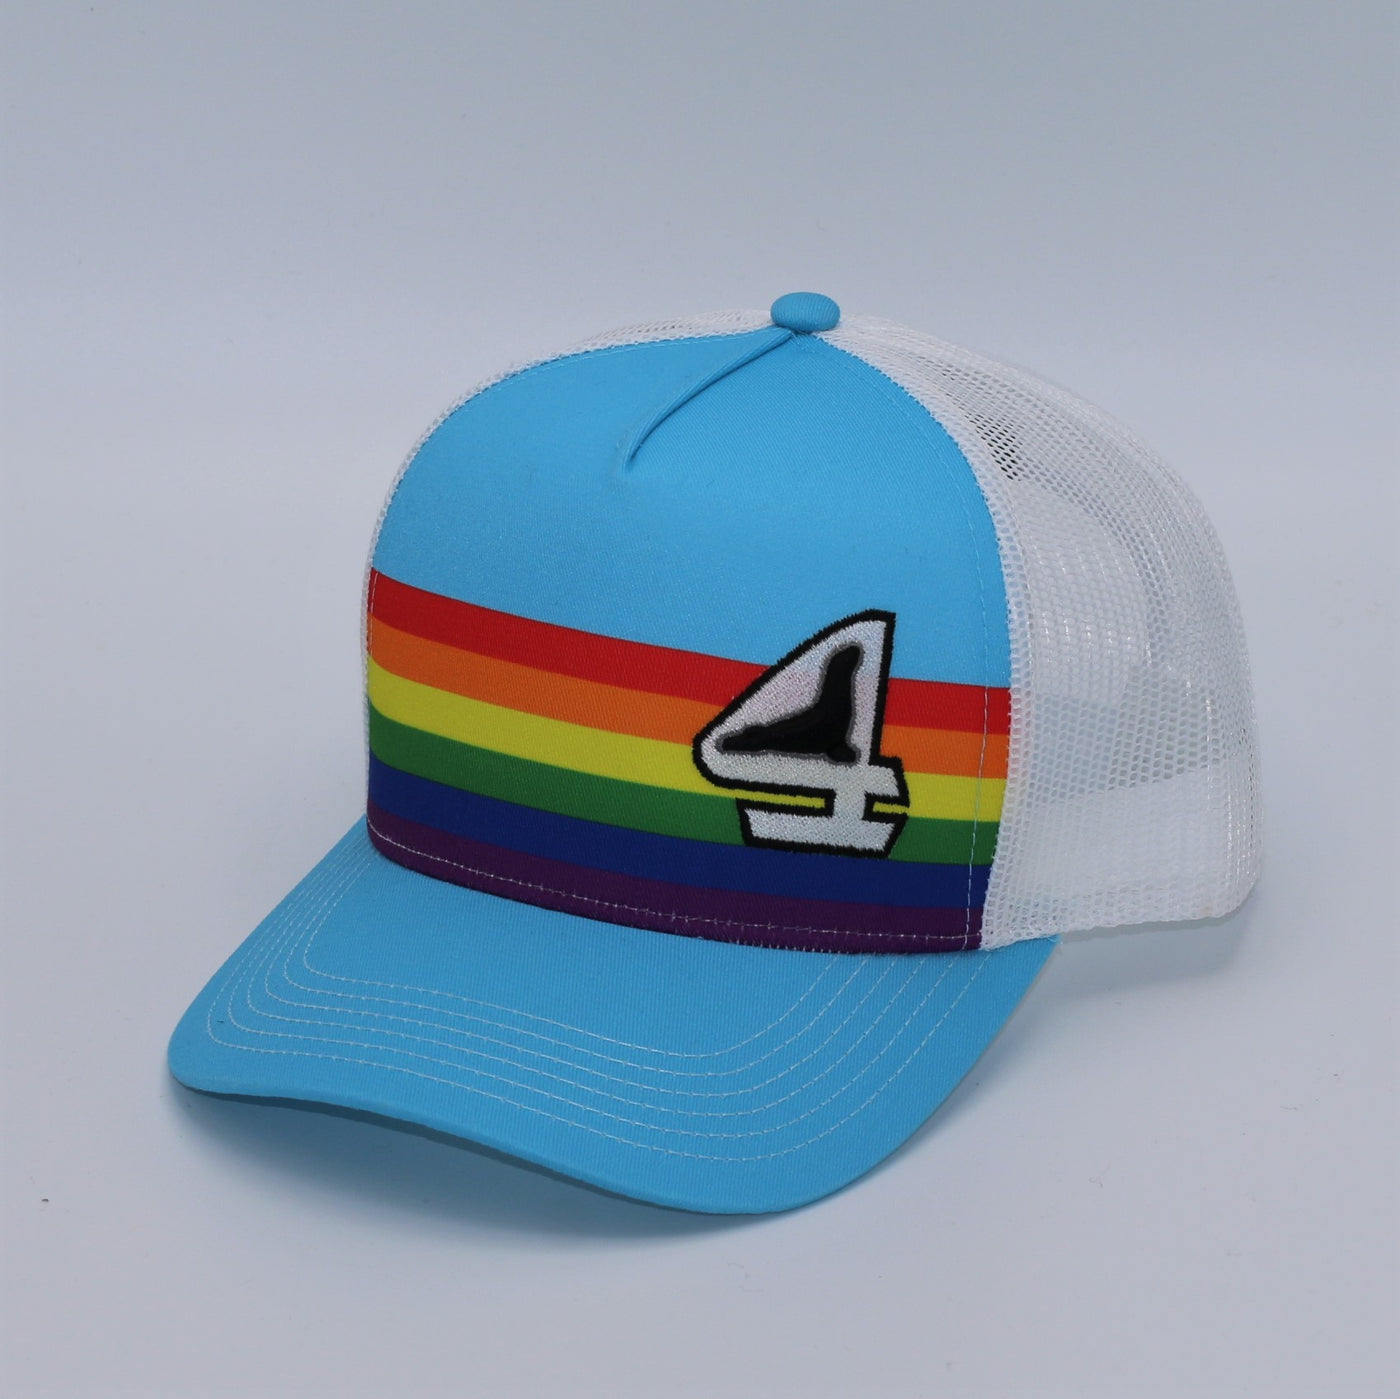 Sunny Days Rainbow - Snapback Trucker Hat